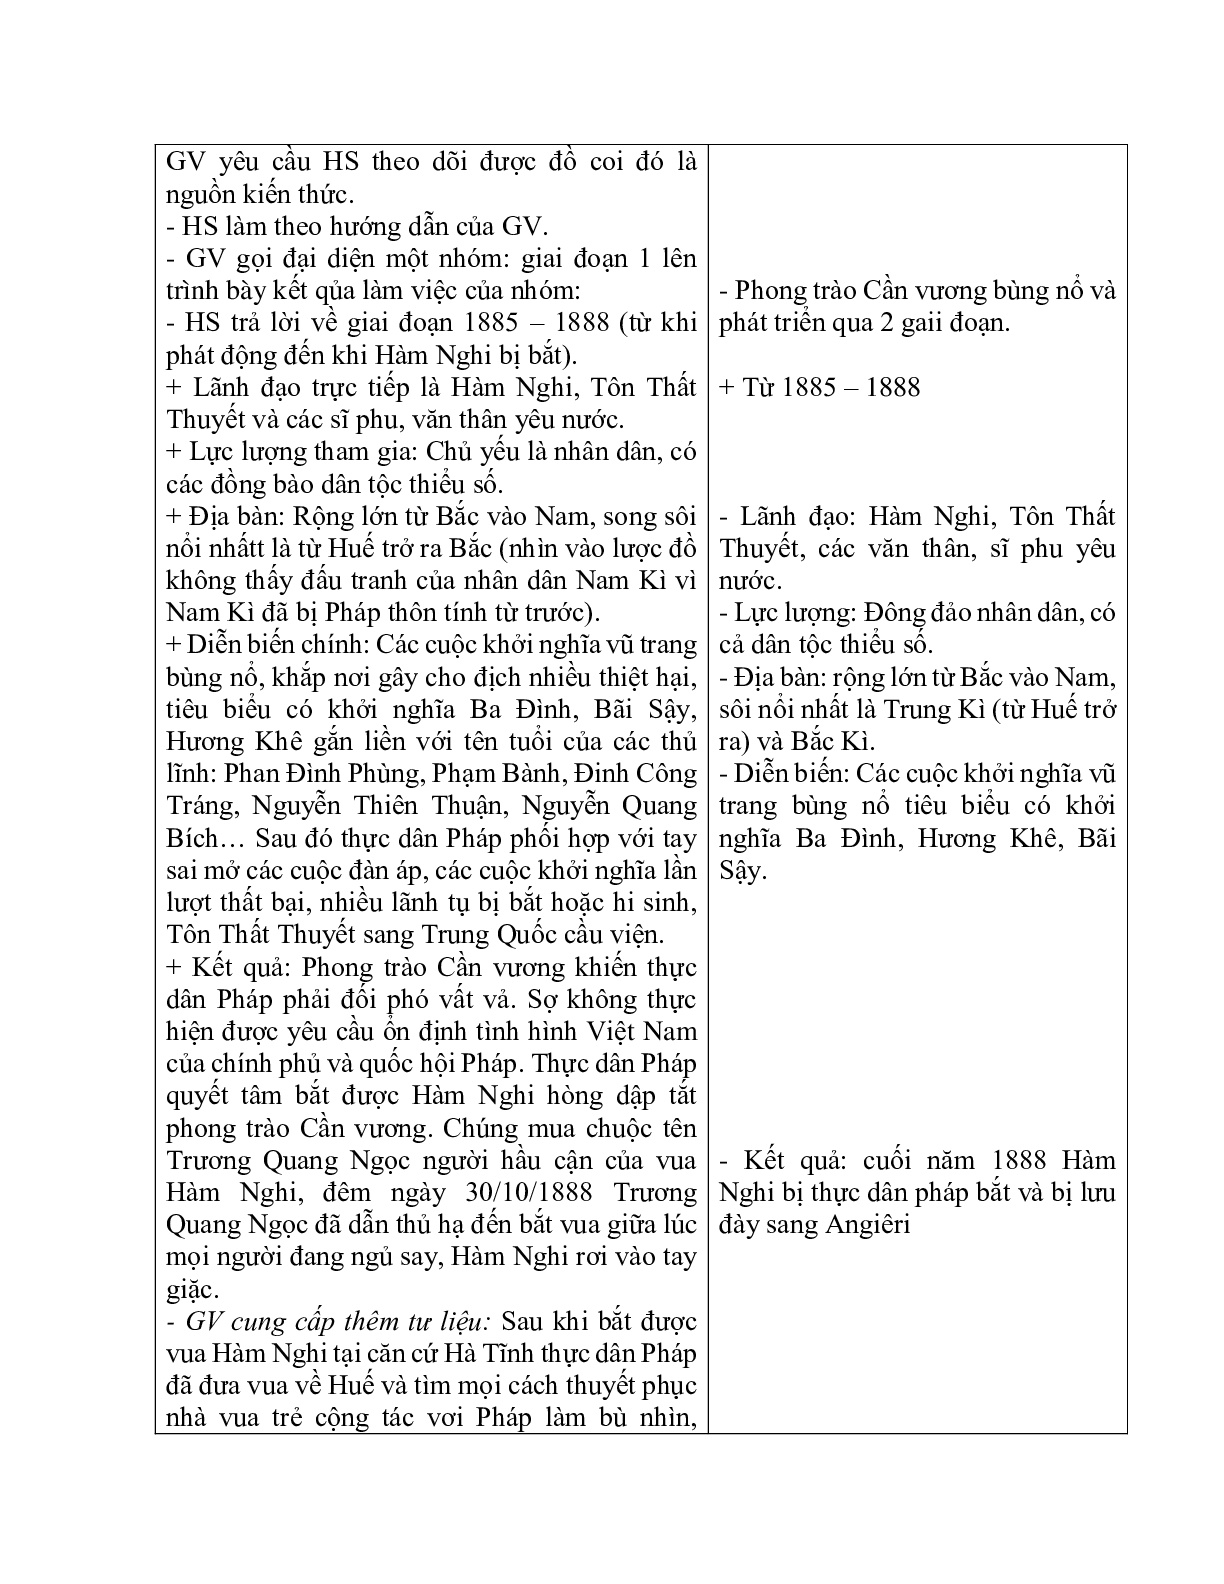 Giáo án Lịch sử 11 Bài 21 phong trào yêu nước chống Pháp của nhân dân Việt Nam trong những năm cuối thế kỉ XIX mới nhất (trang 6)